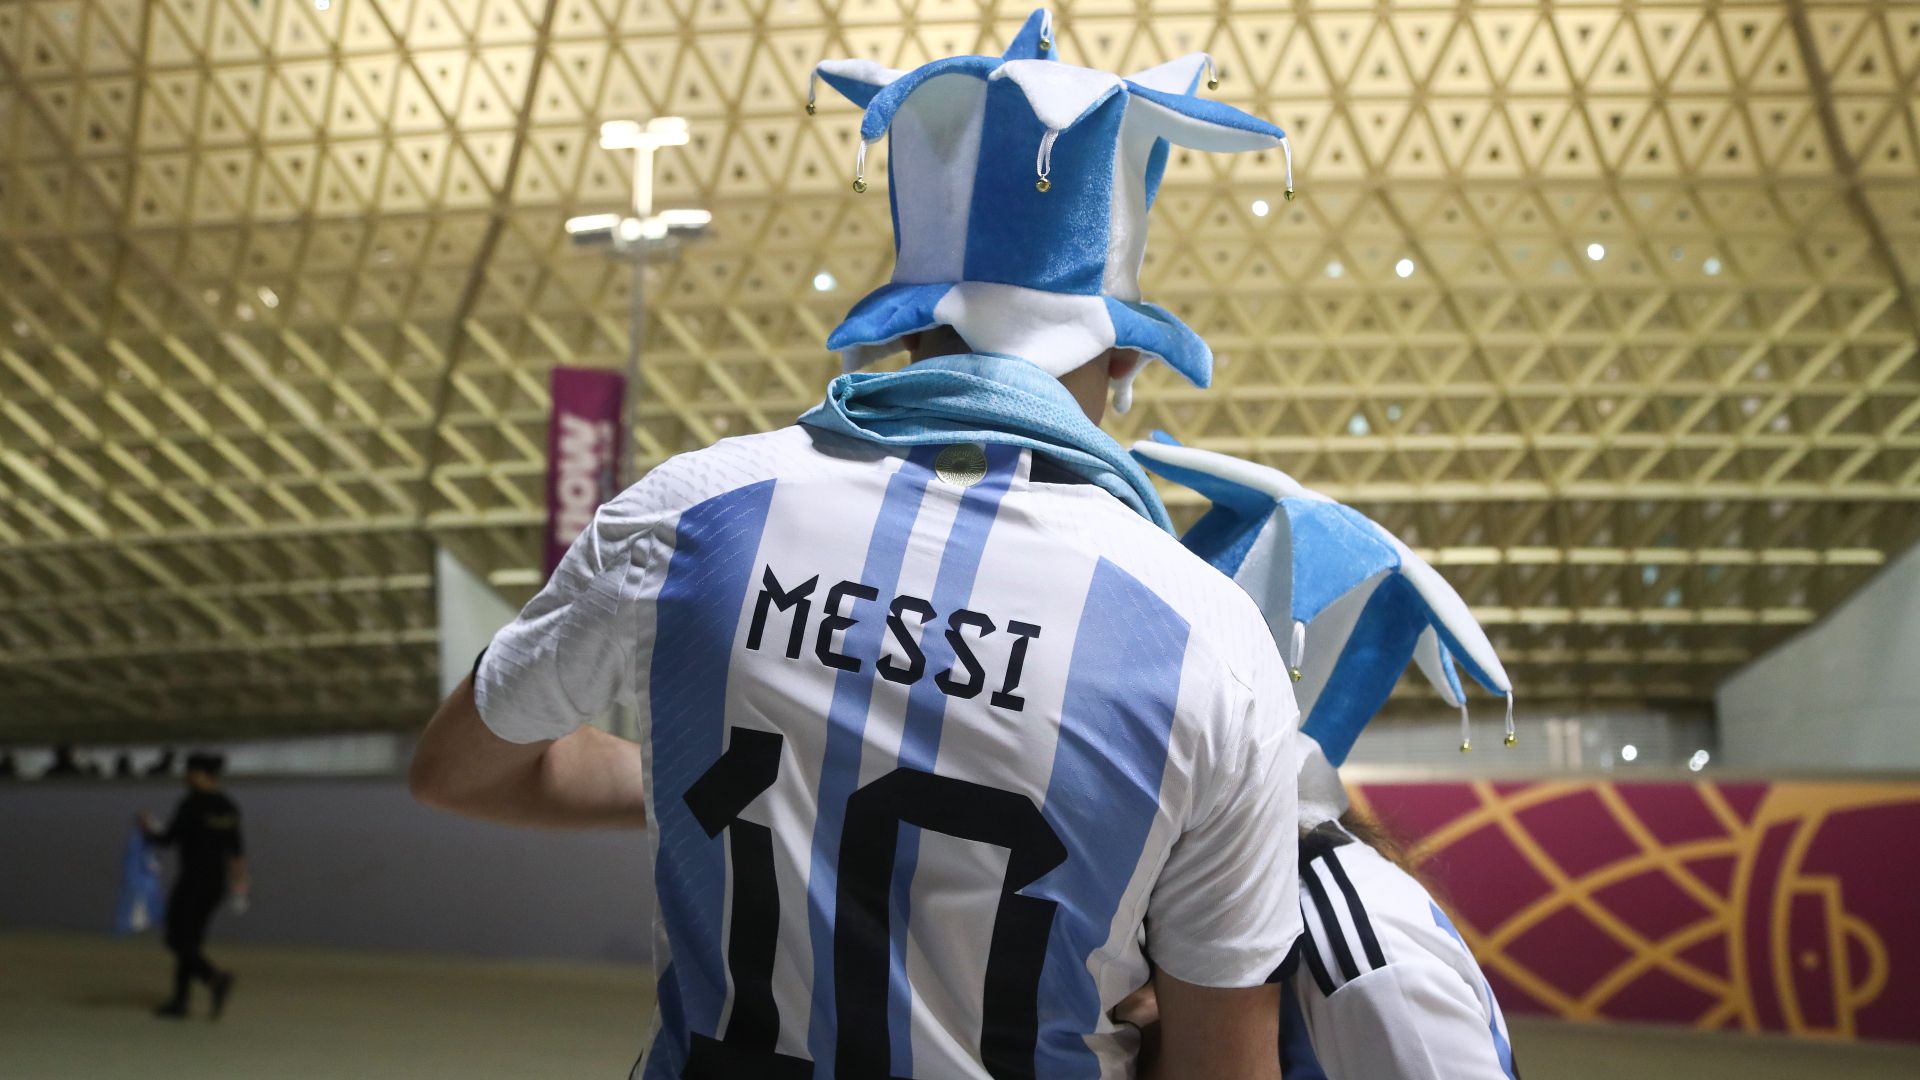 Világszerte hiánycikk lett a Messi-mez